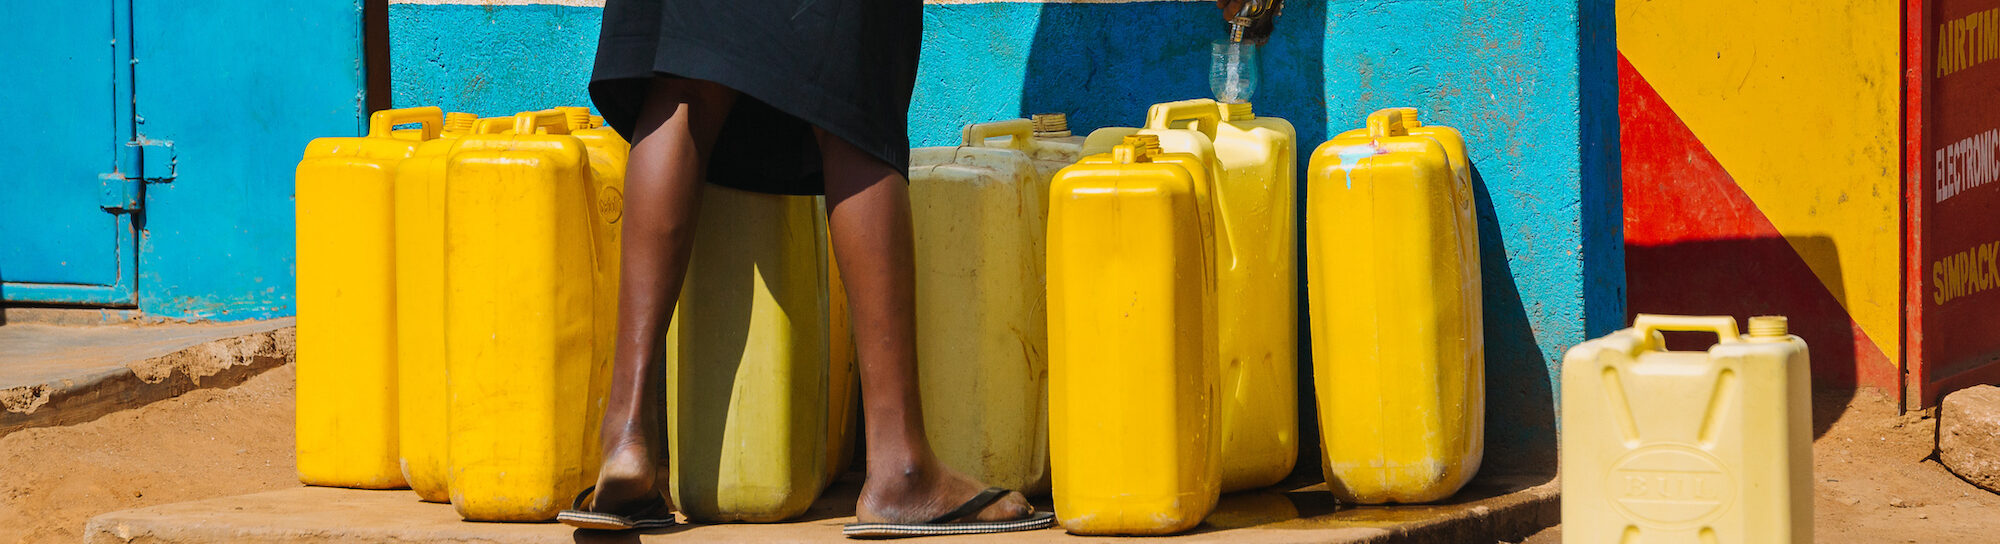 Afrique : 500 millions de personnes sans un accès sûr à l’eau potable